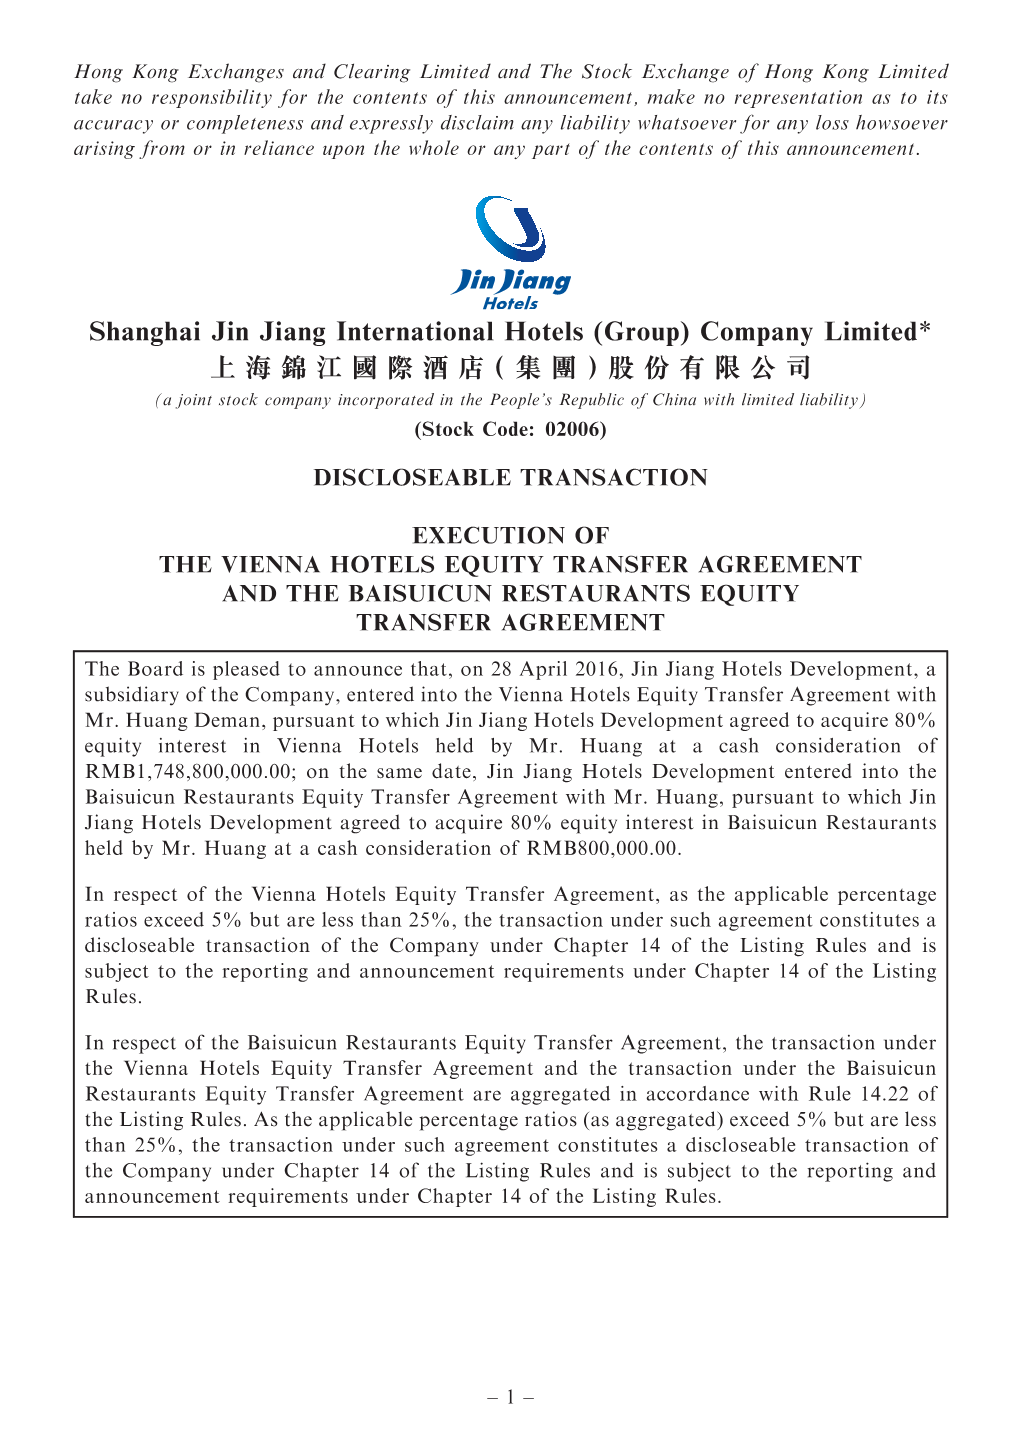 Shanghai Jin Jiang International Hotels